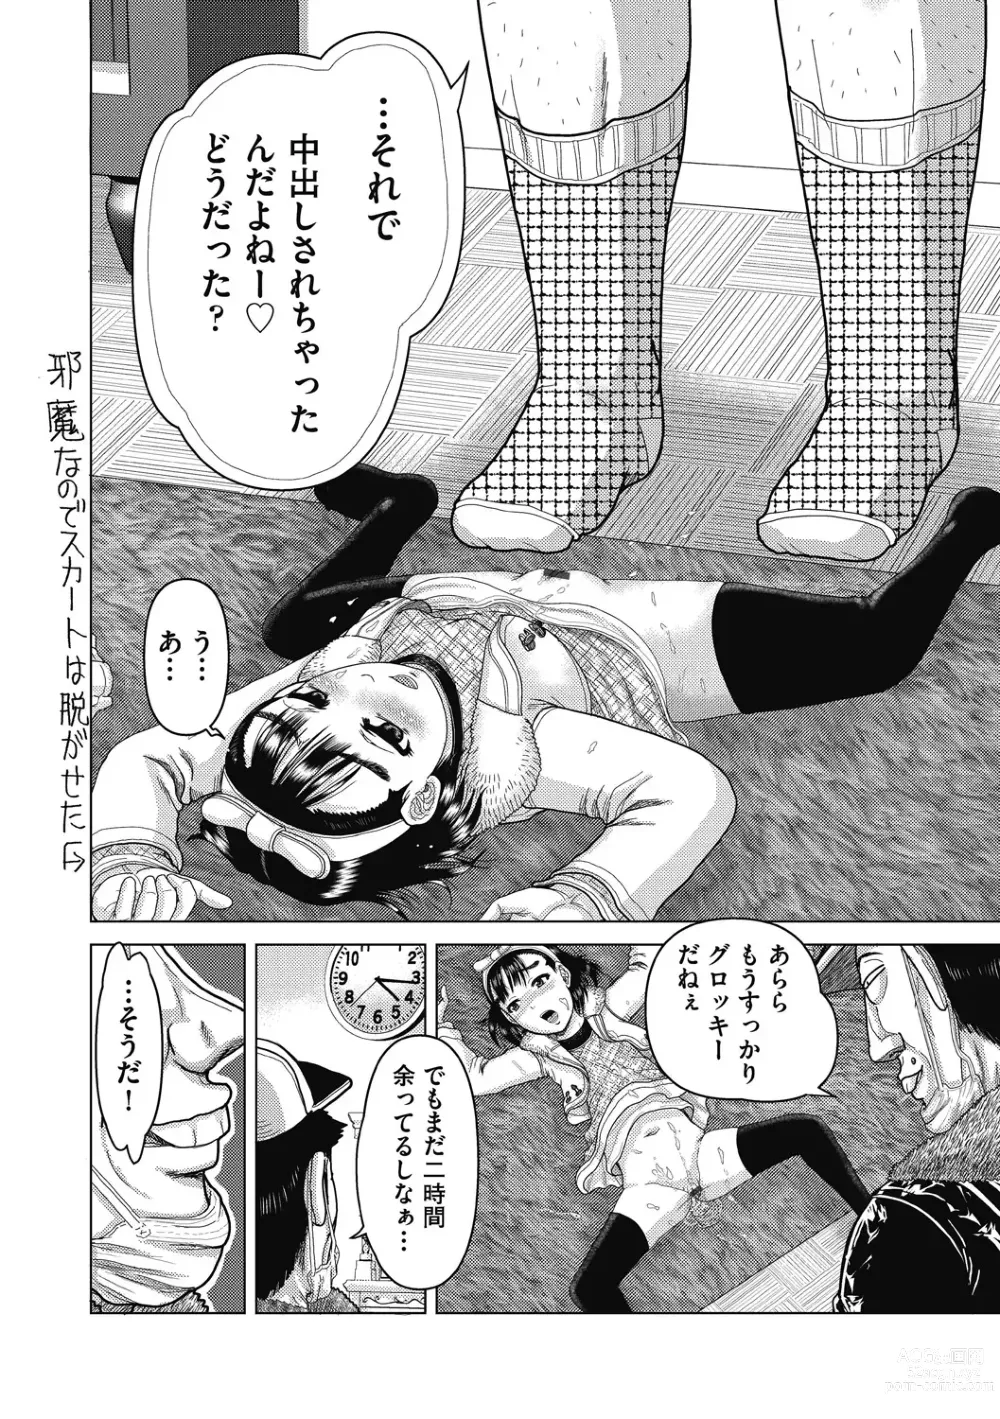 Page 12 of manga Shoujo Kumikyoku 26